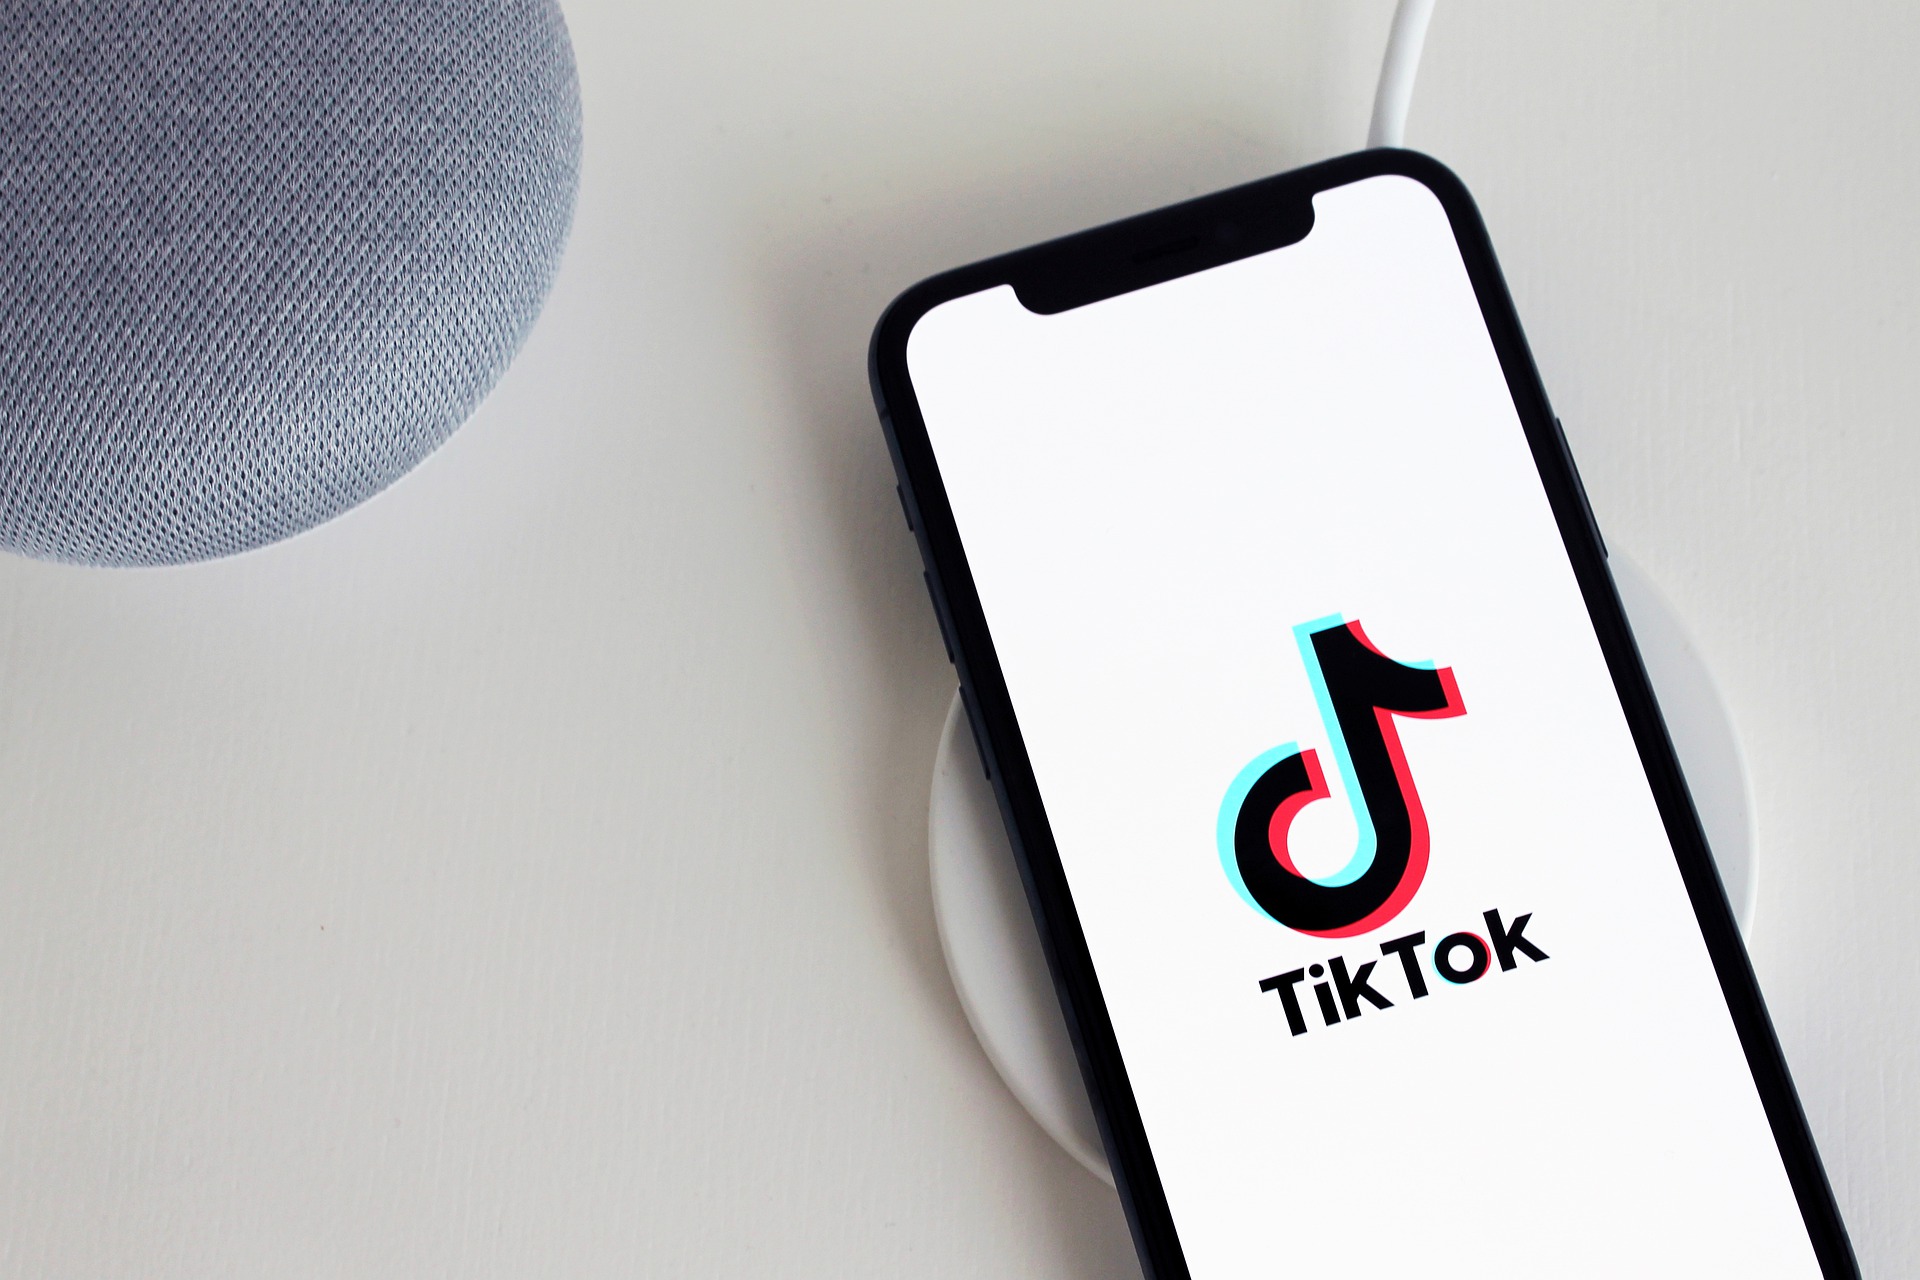 Customer Support for TikTok